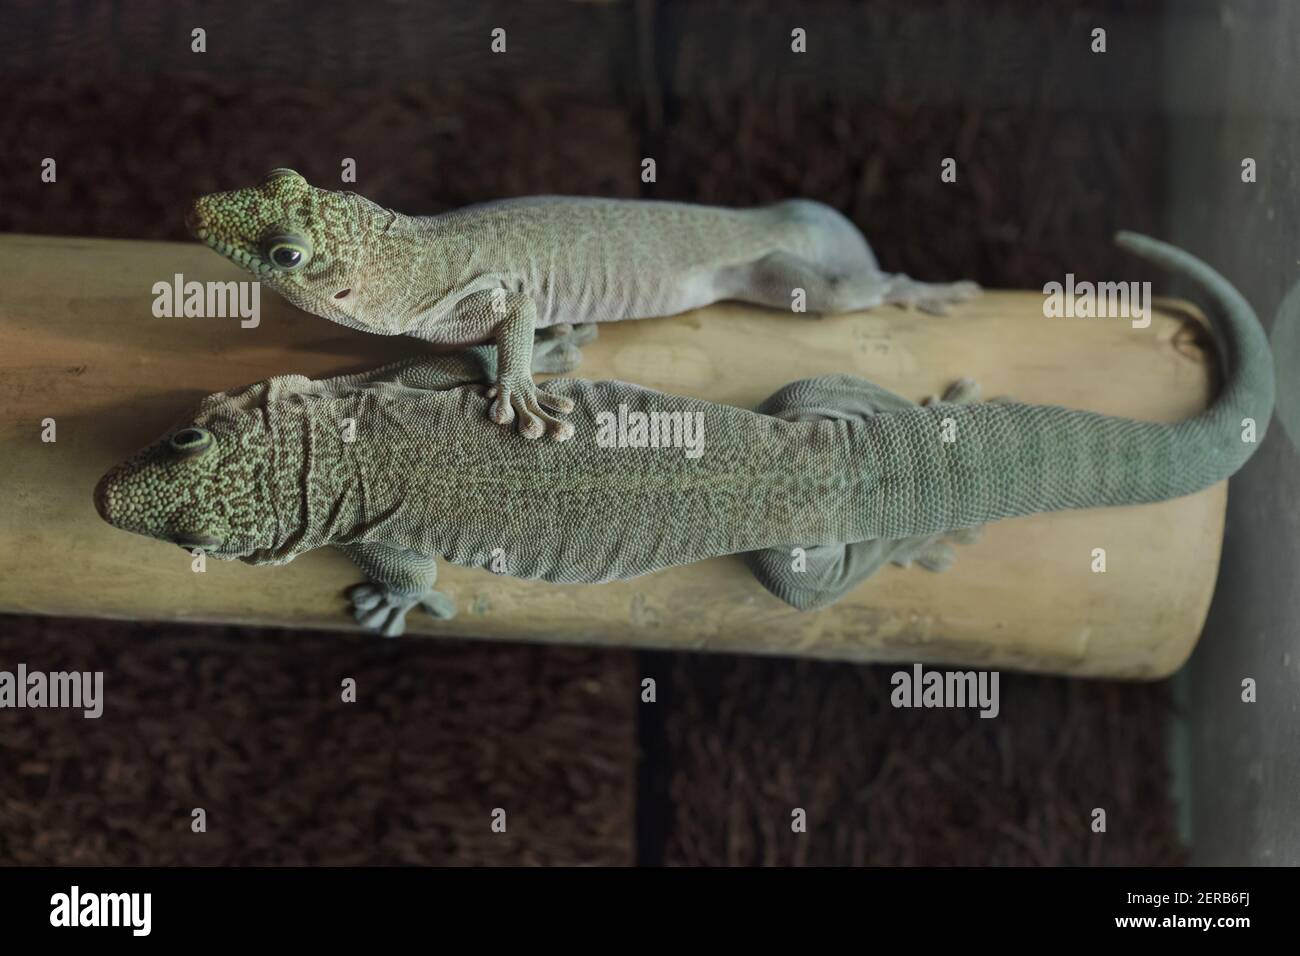 Gecko de pie (Phelsuma standingi), también conocido como el gecko de día. Foto de stock